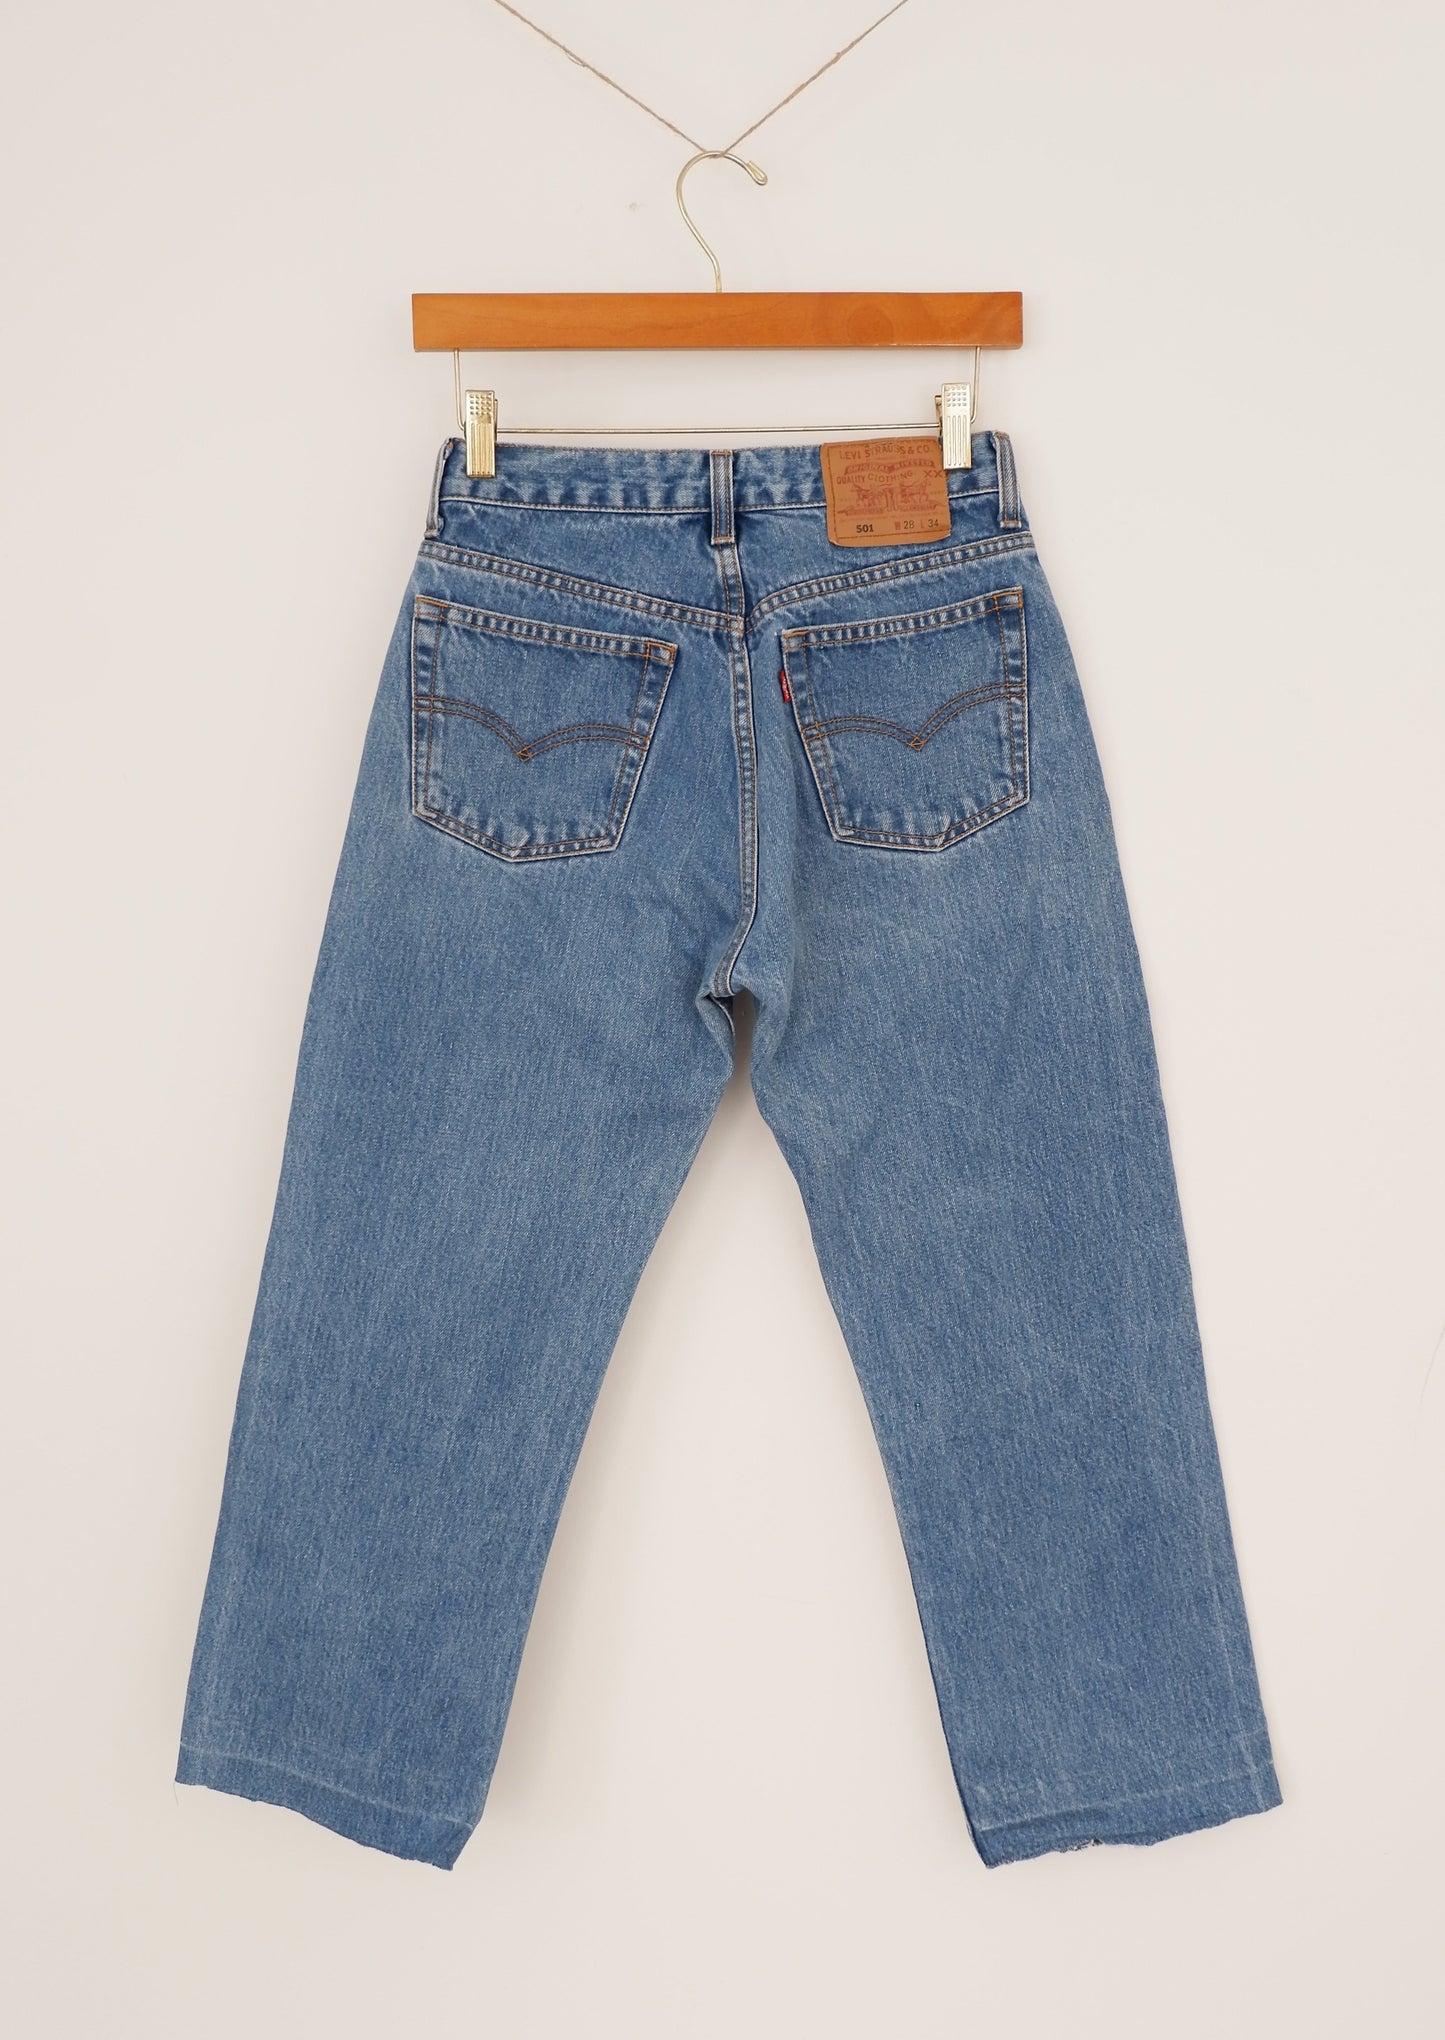 Levis 501 Vintage Medium Wash Straight Leg Jeans - 26